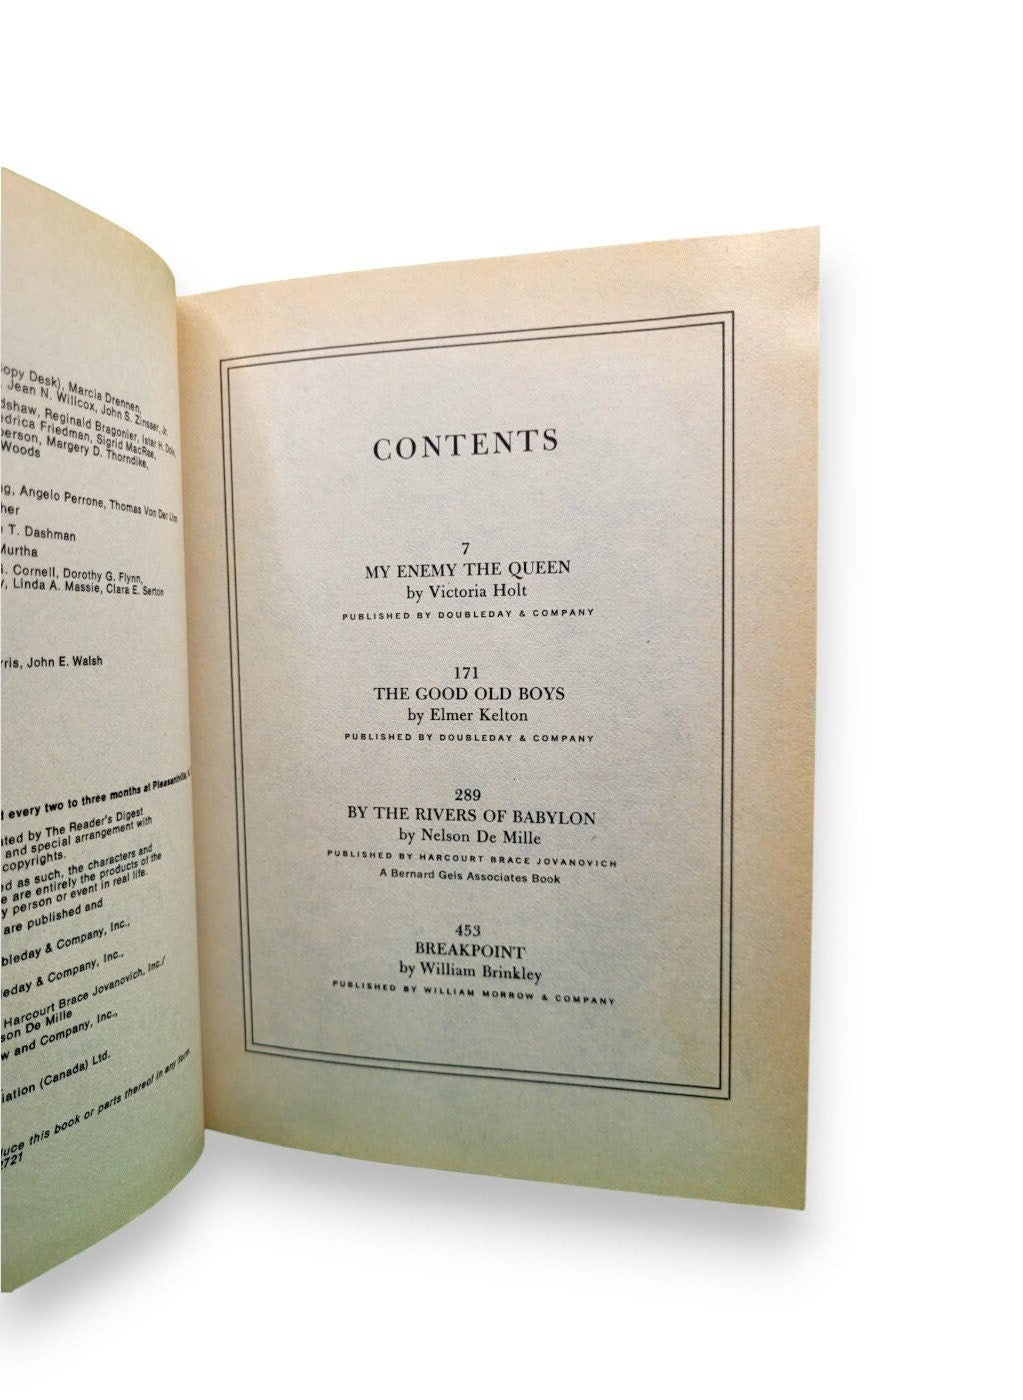 Reader's Digest Condensed Books: Volume 4 1978